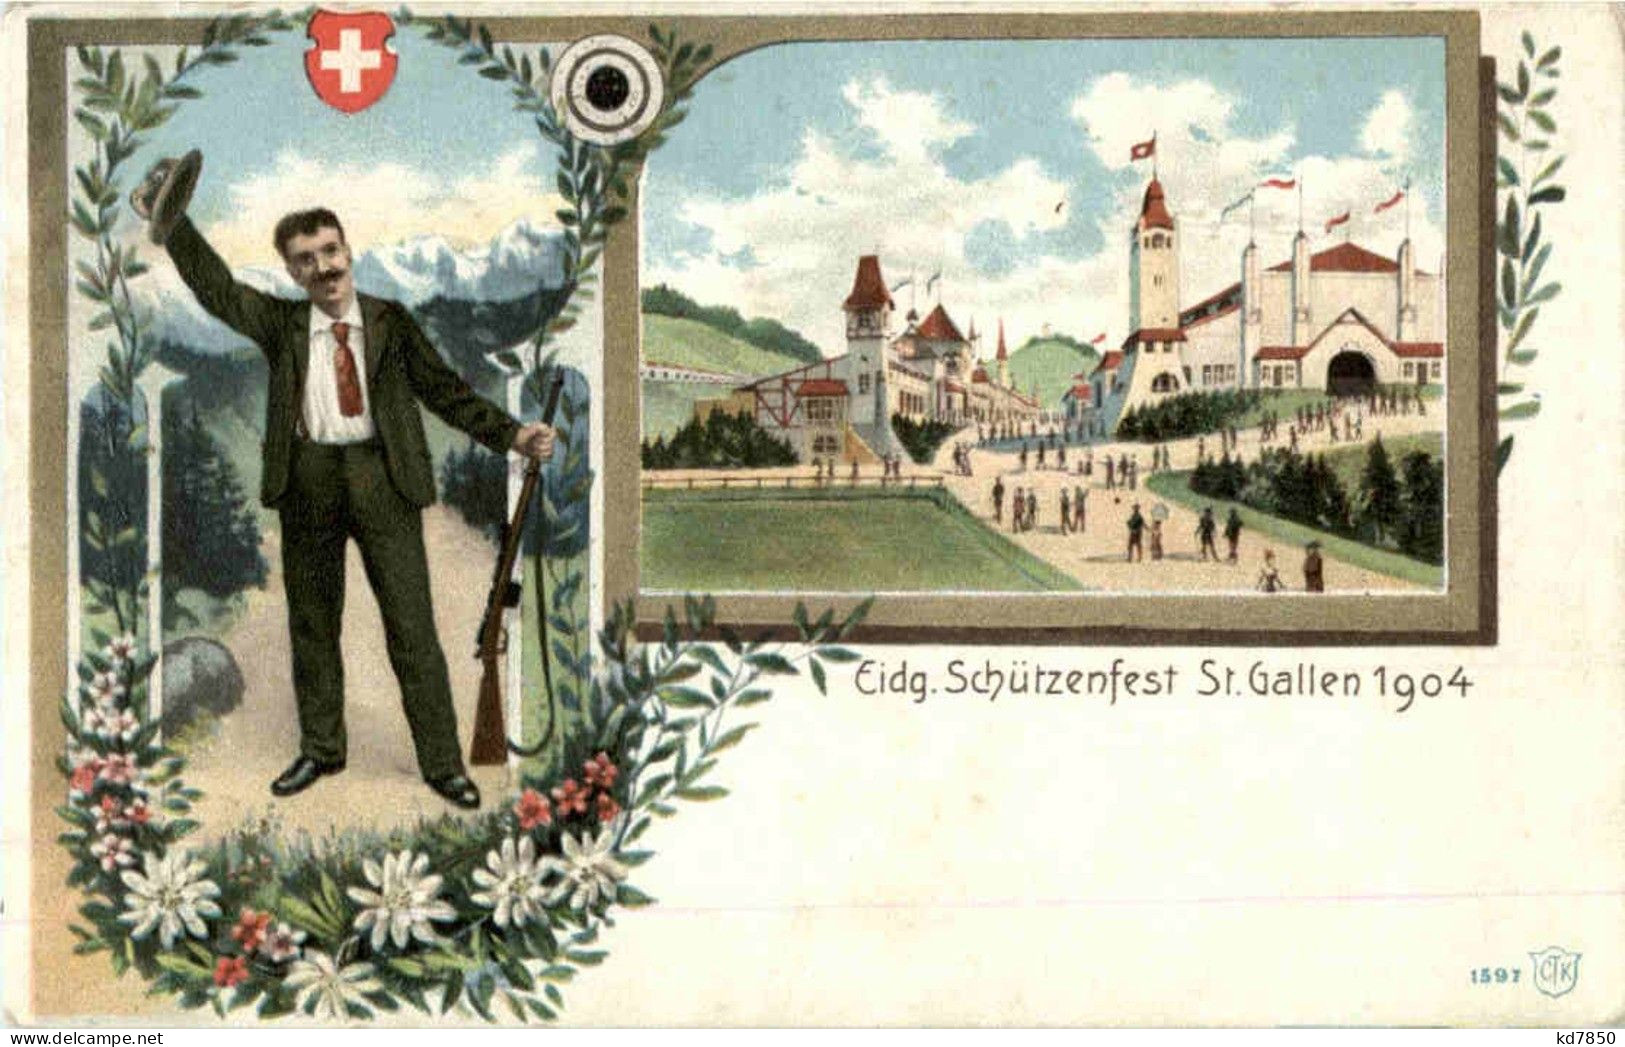 St. Gallen - Eidgen. Schützenfest 1904 - San Gallo